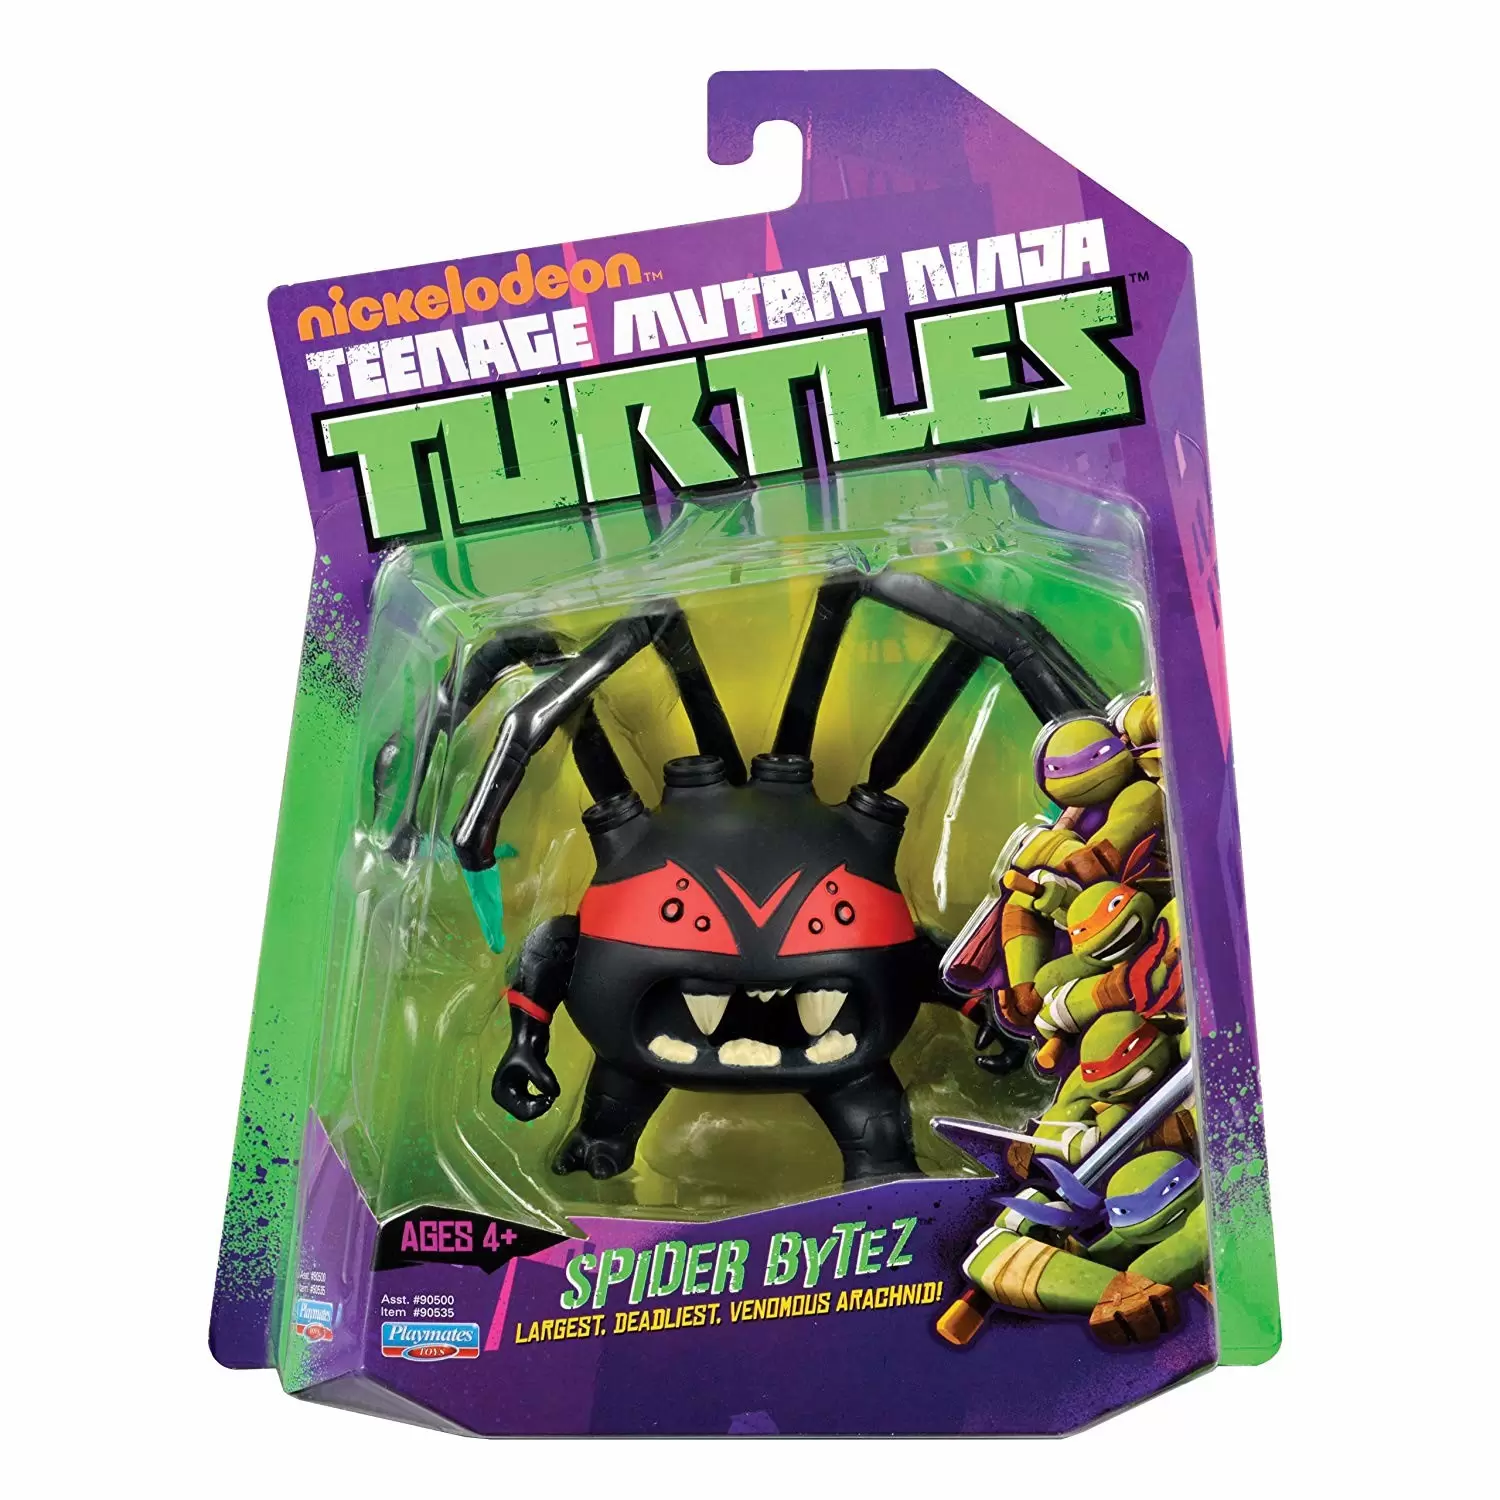 Teenage Mutant Ninja Turtles - Spider Bytez